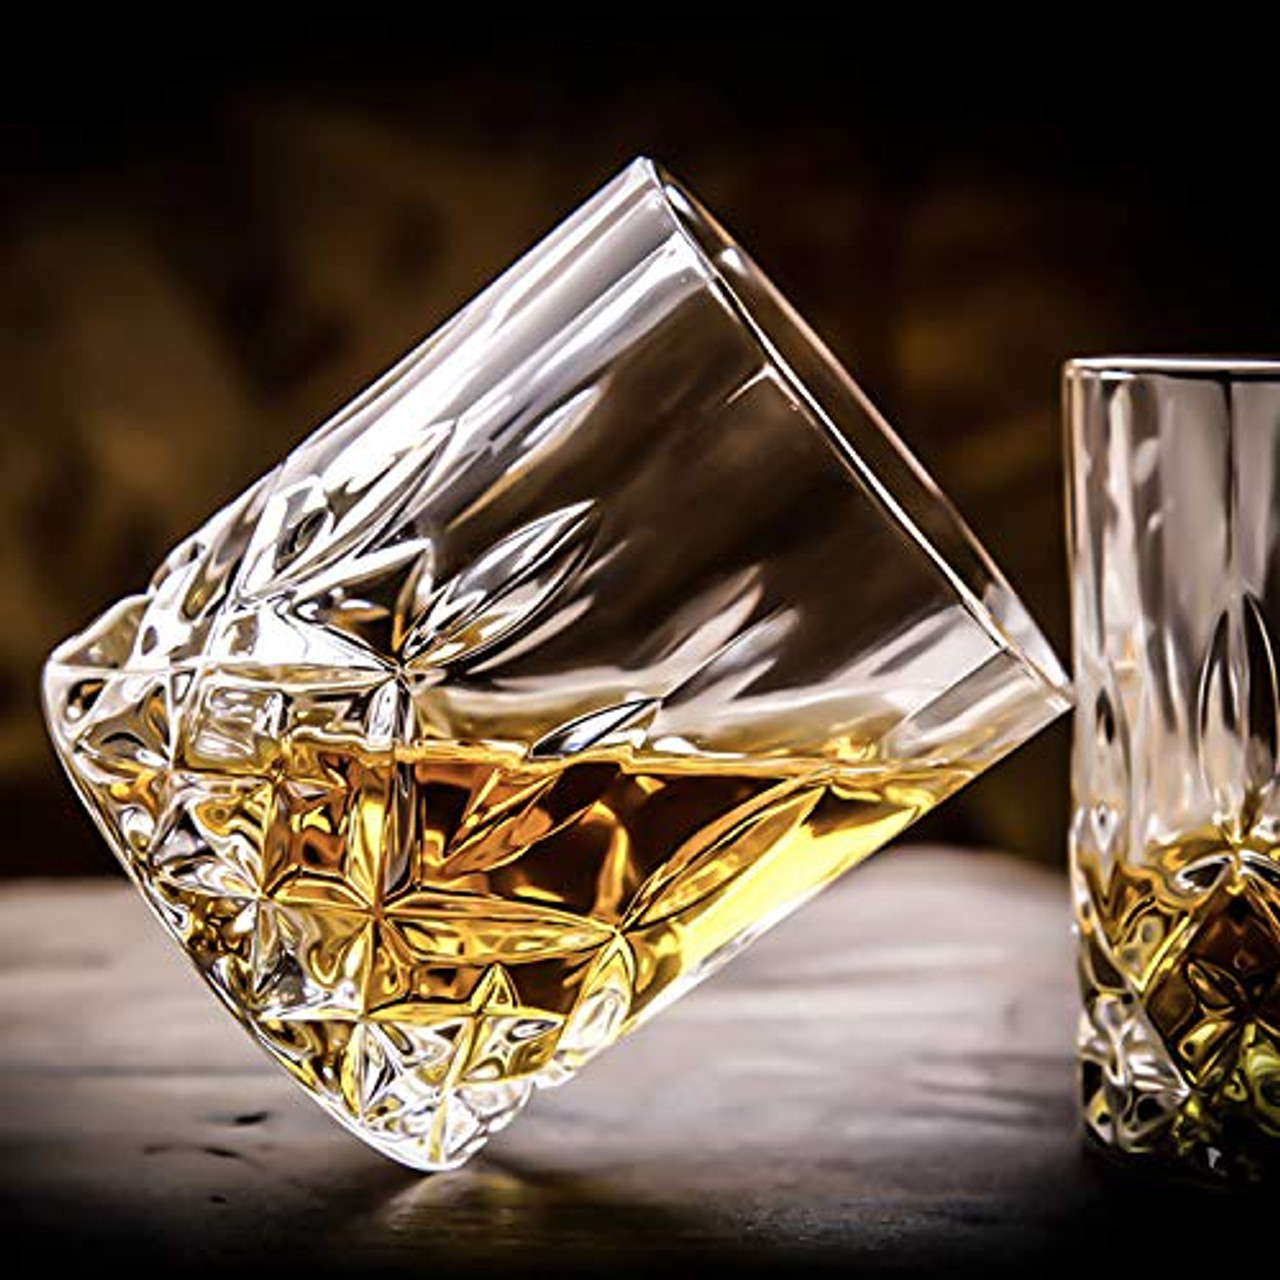 RorAem Whiskey Glasses - Crystal Whiskey Glasses Set of 6 Bourbon